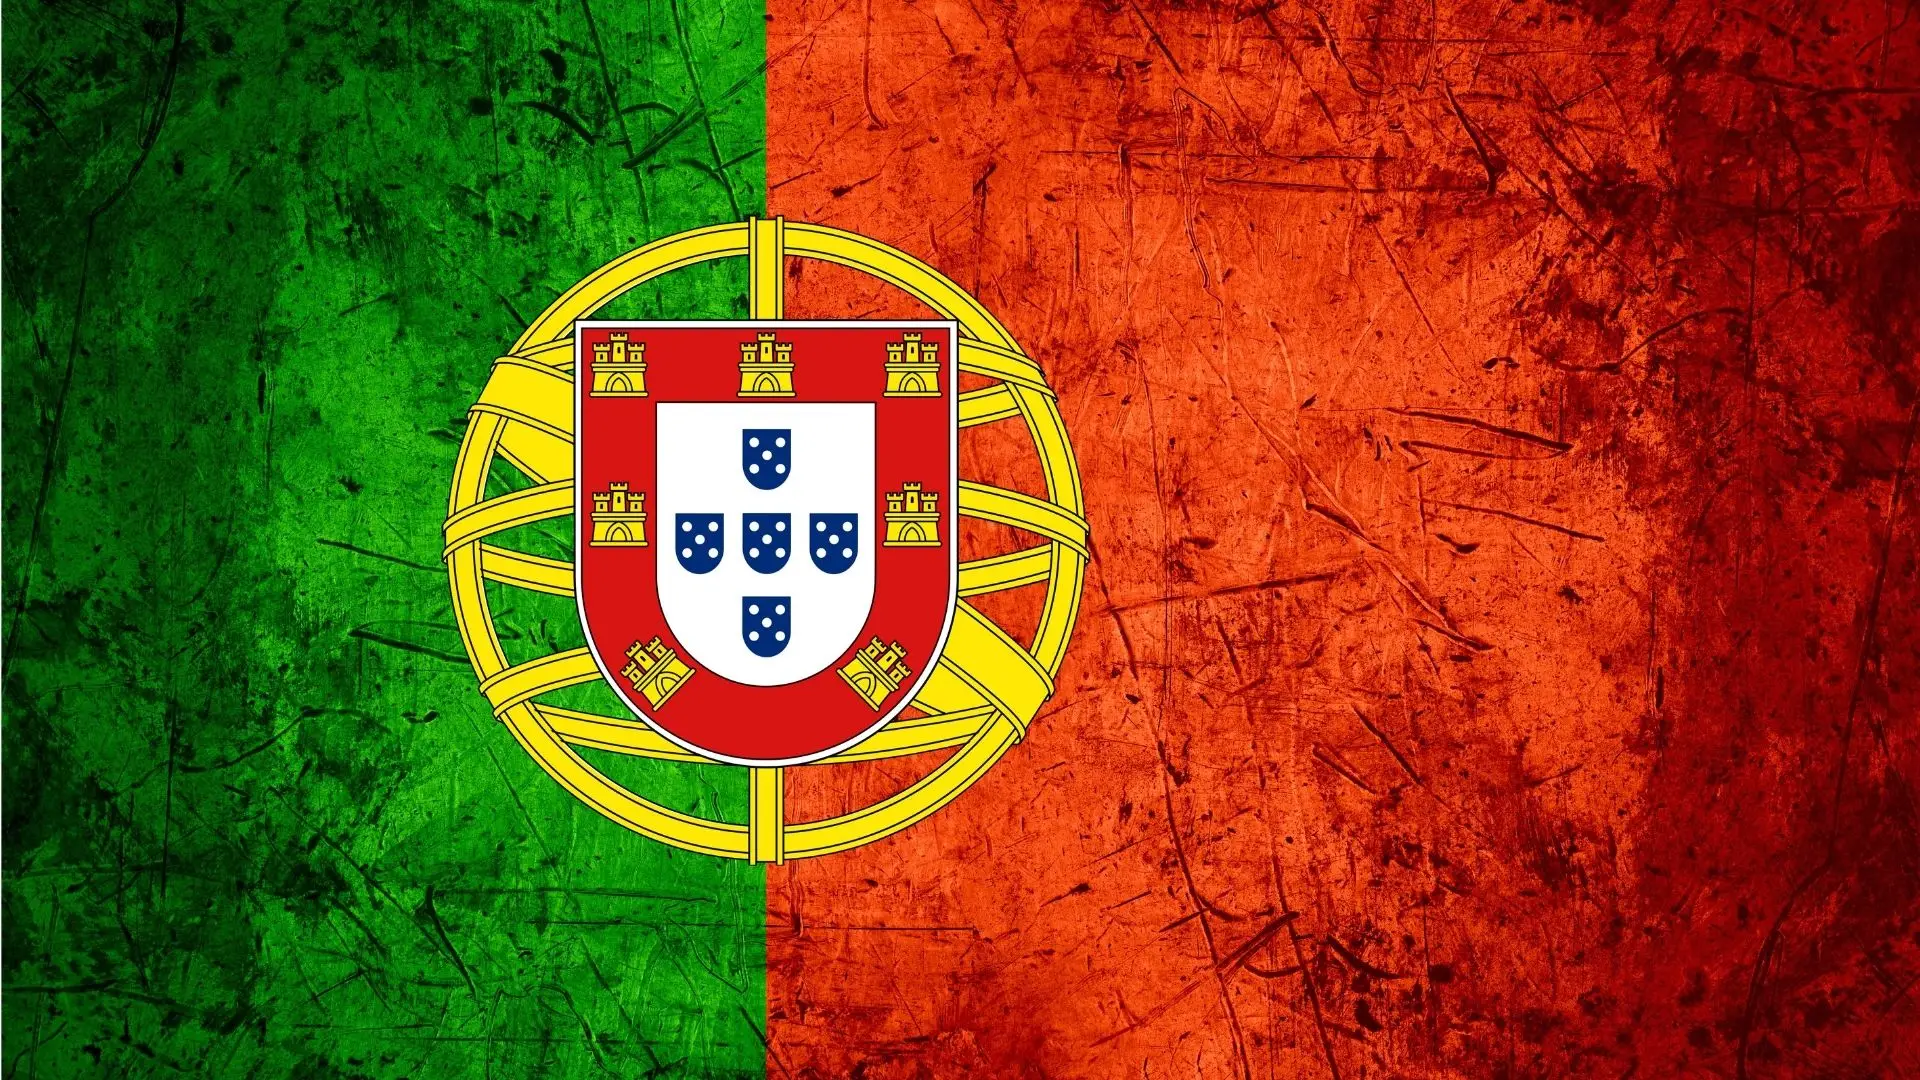 Economia dia a dia: Portugal como palco de produções estrangeiras